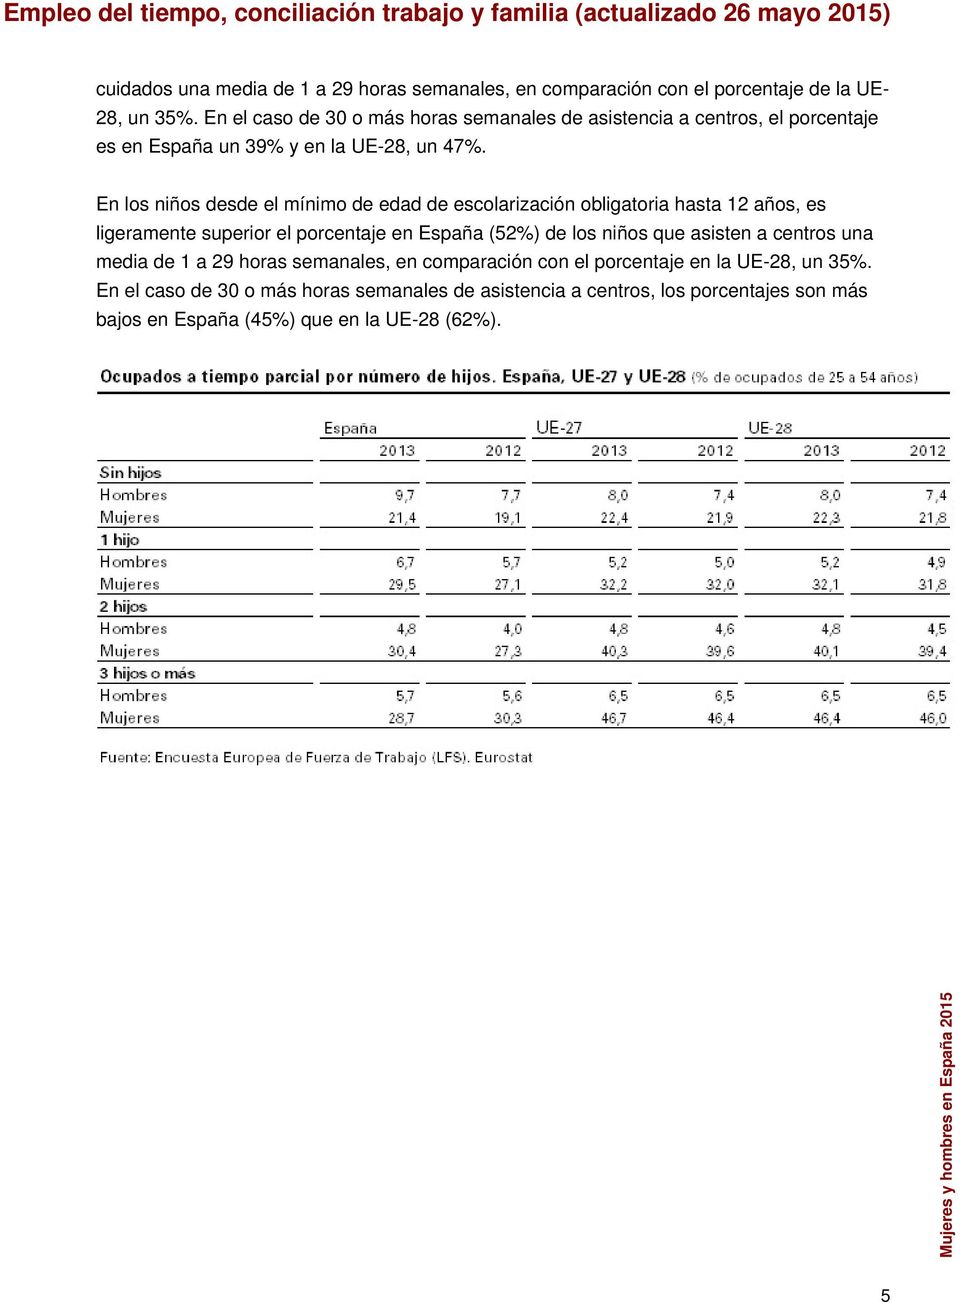 En los niños desde el mínimo de edad de escolarización obligatoria hasta 12 años, es ligeramente superior el porcentaje en España (52%) de los niños que